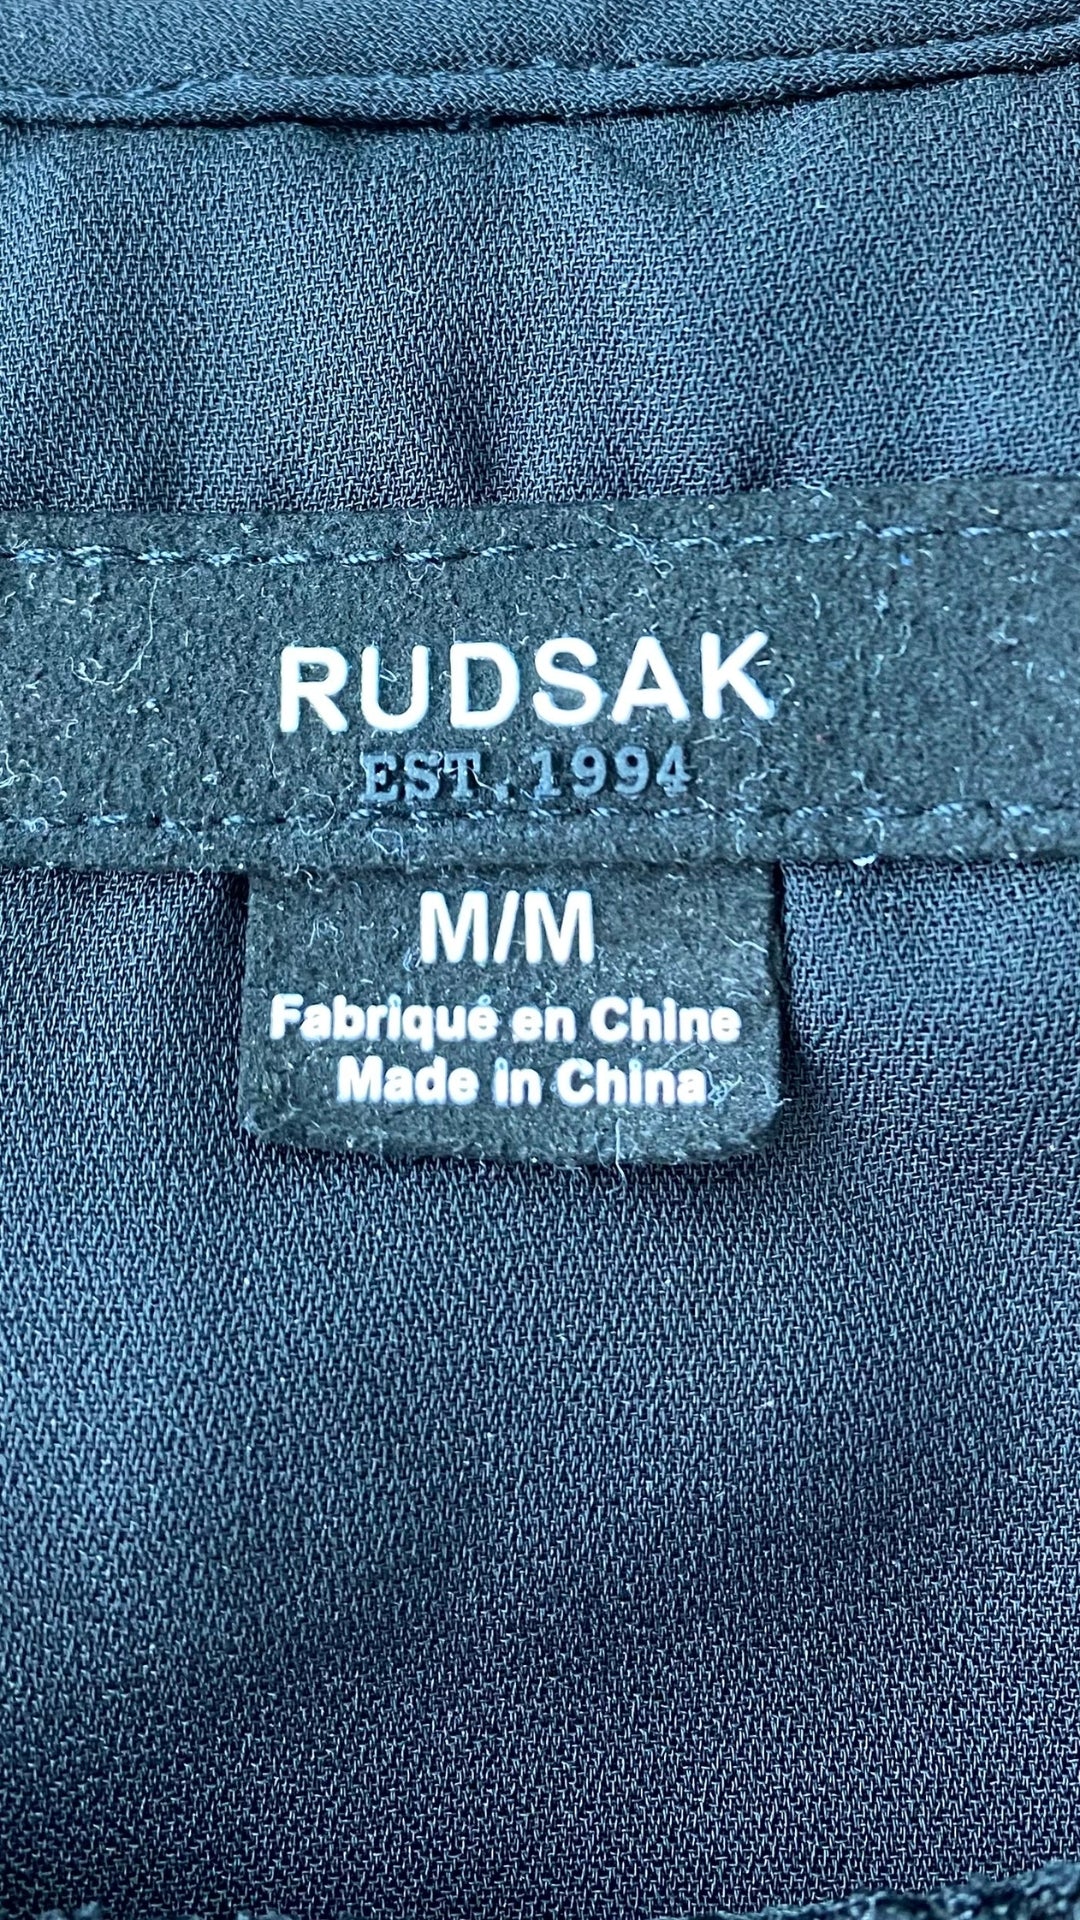 Camisole noire Rudsak double épaisseur avec filet. Vue de l'étiquette de marque et taille.